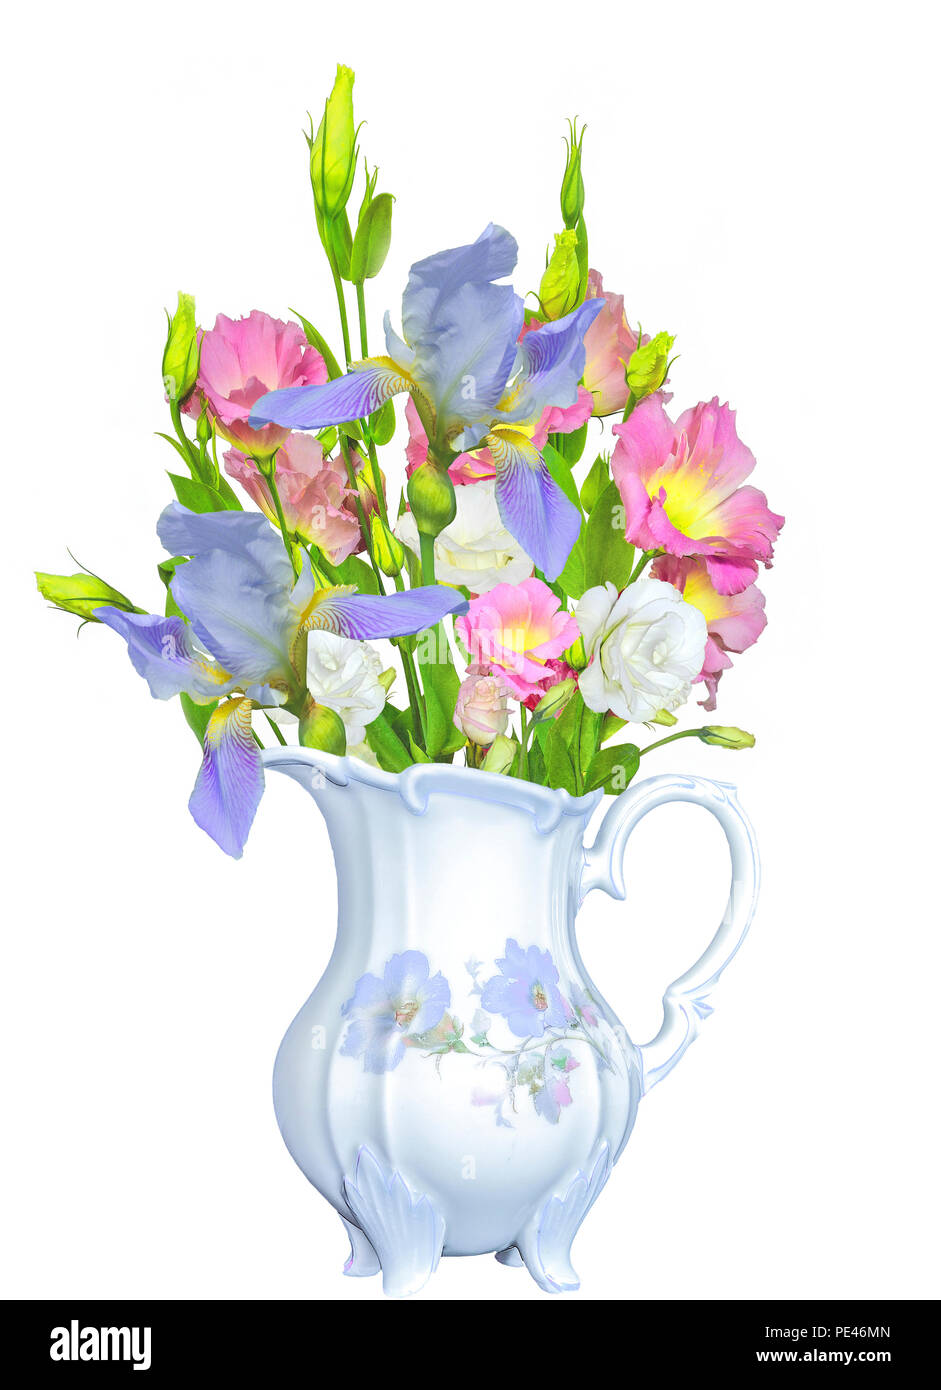 Blumenstrauß aus Zartes Rosa mit gelben Eustoma Lisianthus Blumen und blauen Blenden in Antique vintage Porzellan Kanne, auf weißem Hintergrund Stockfoto